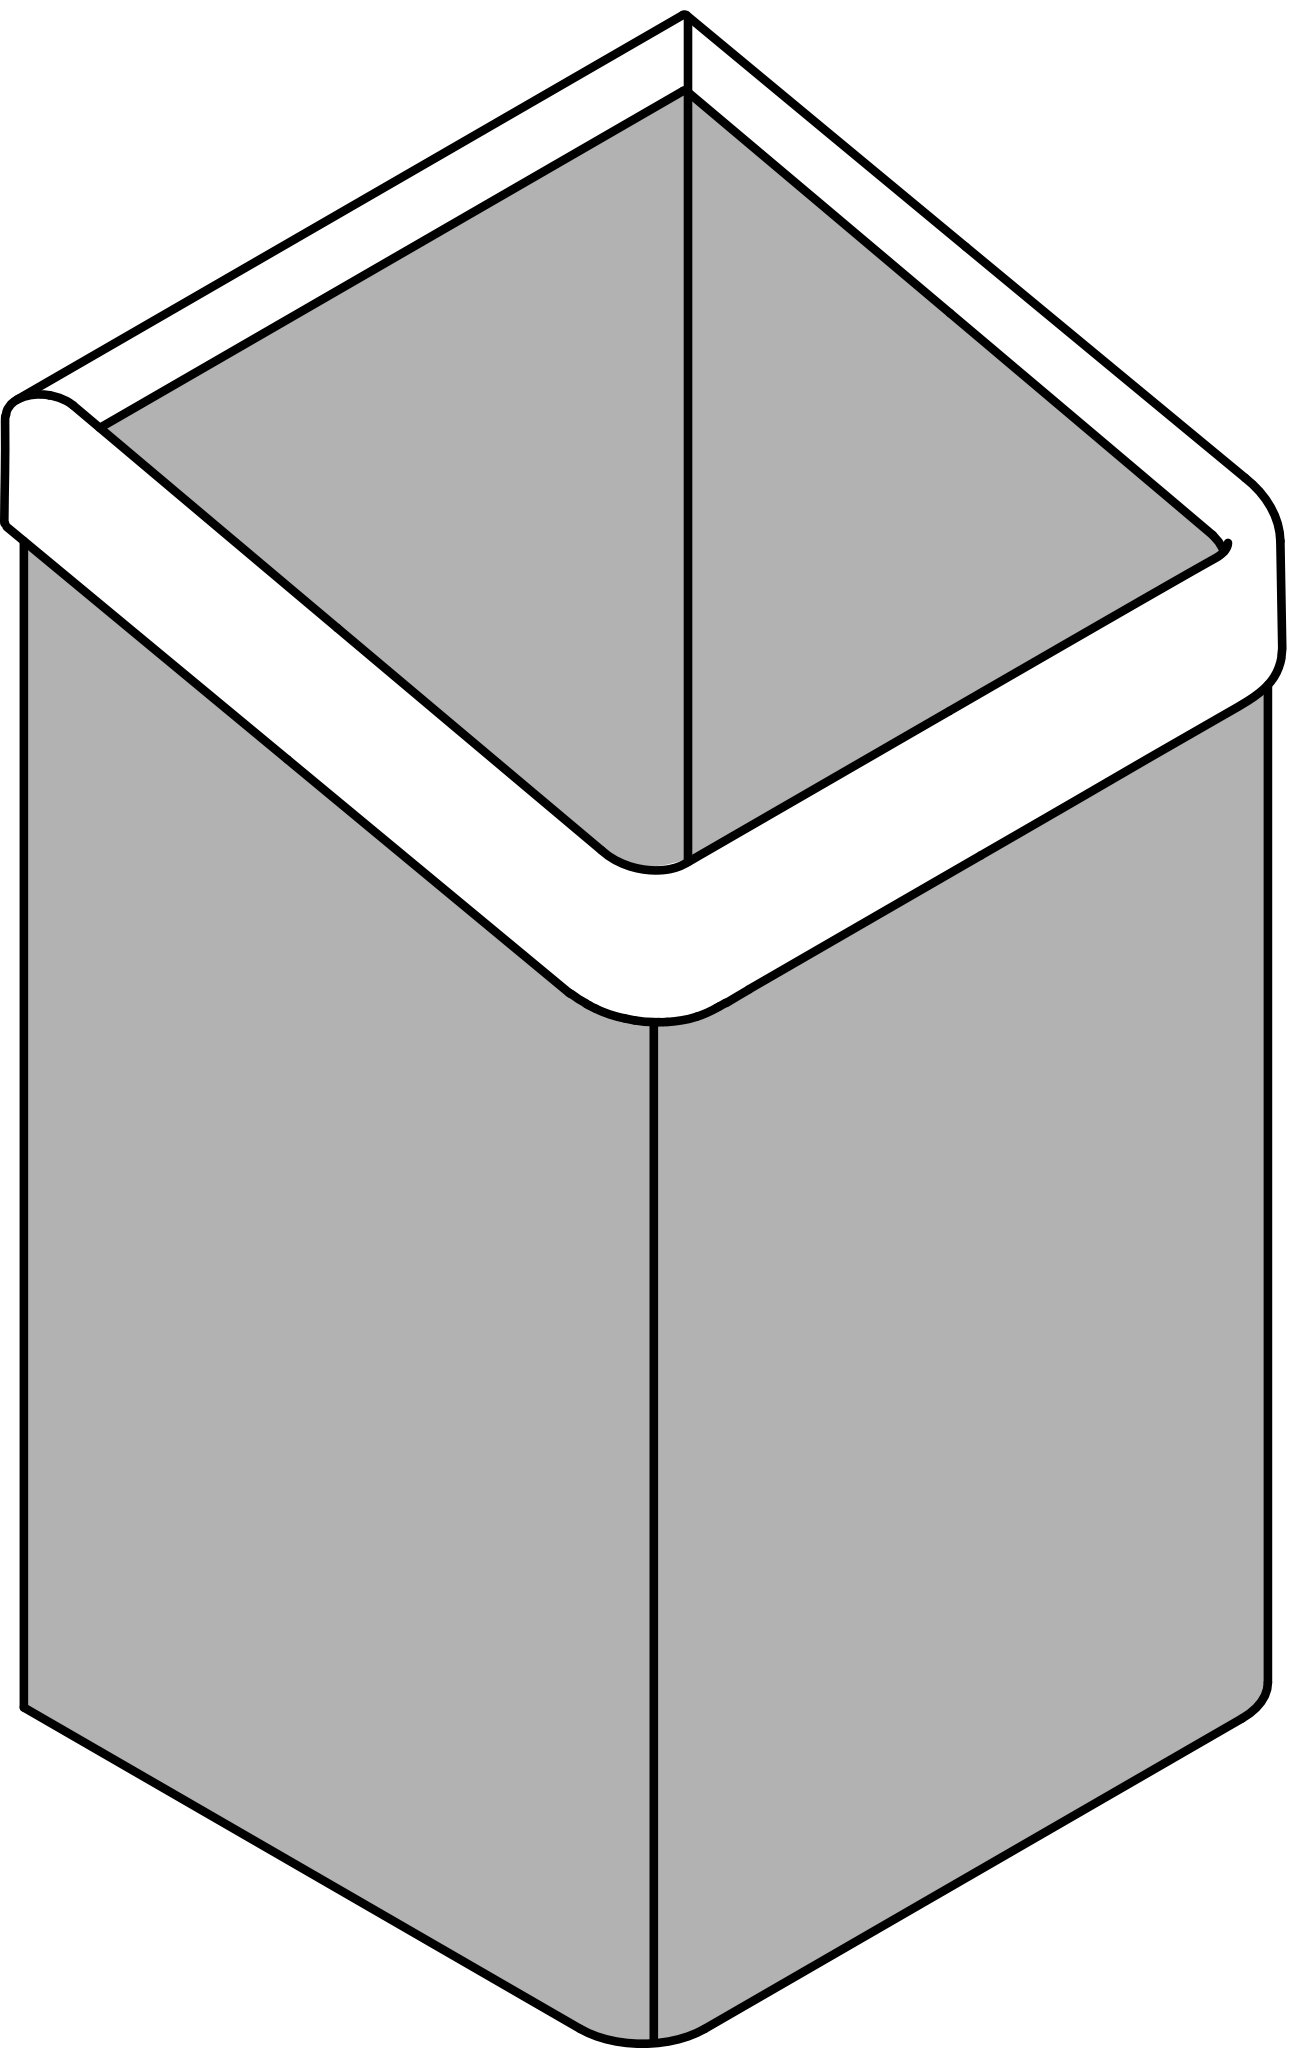 HEWI Papierhandtuchkorb „Serie 477“ 30 cm